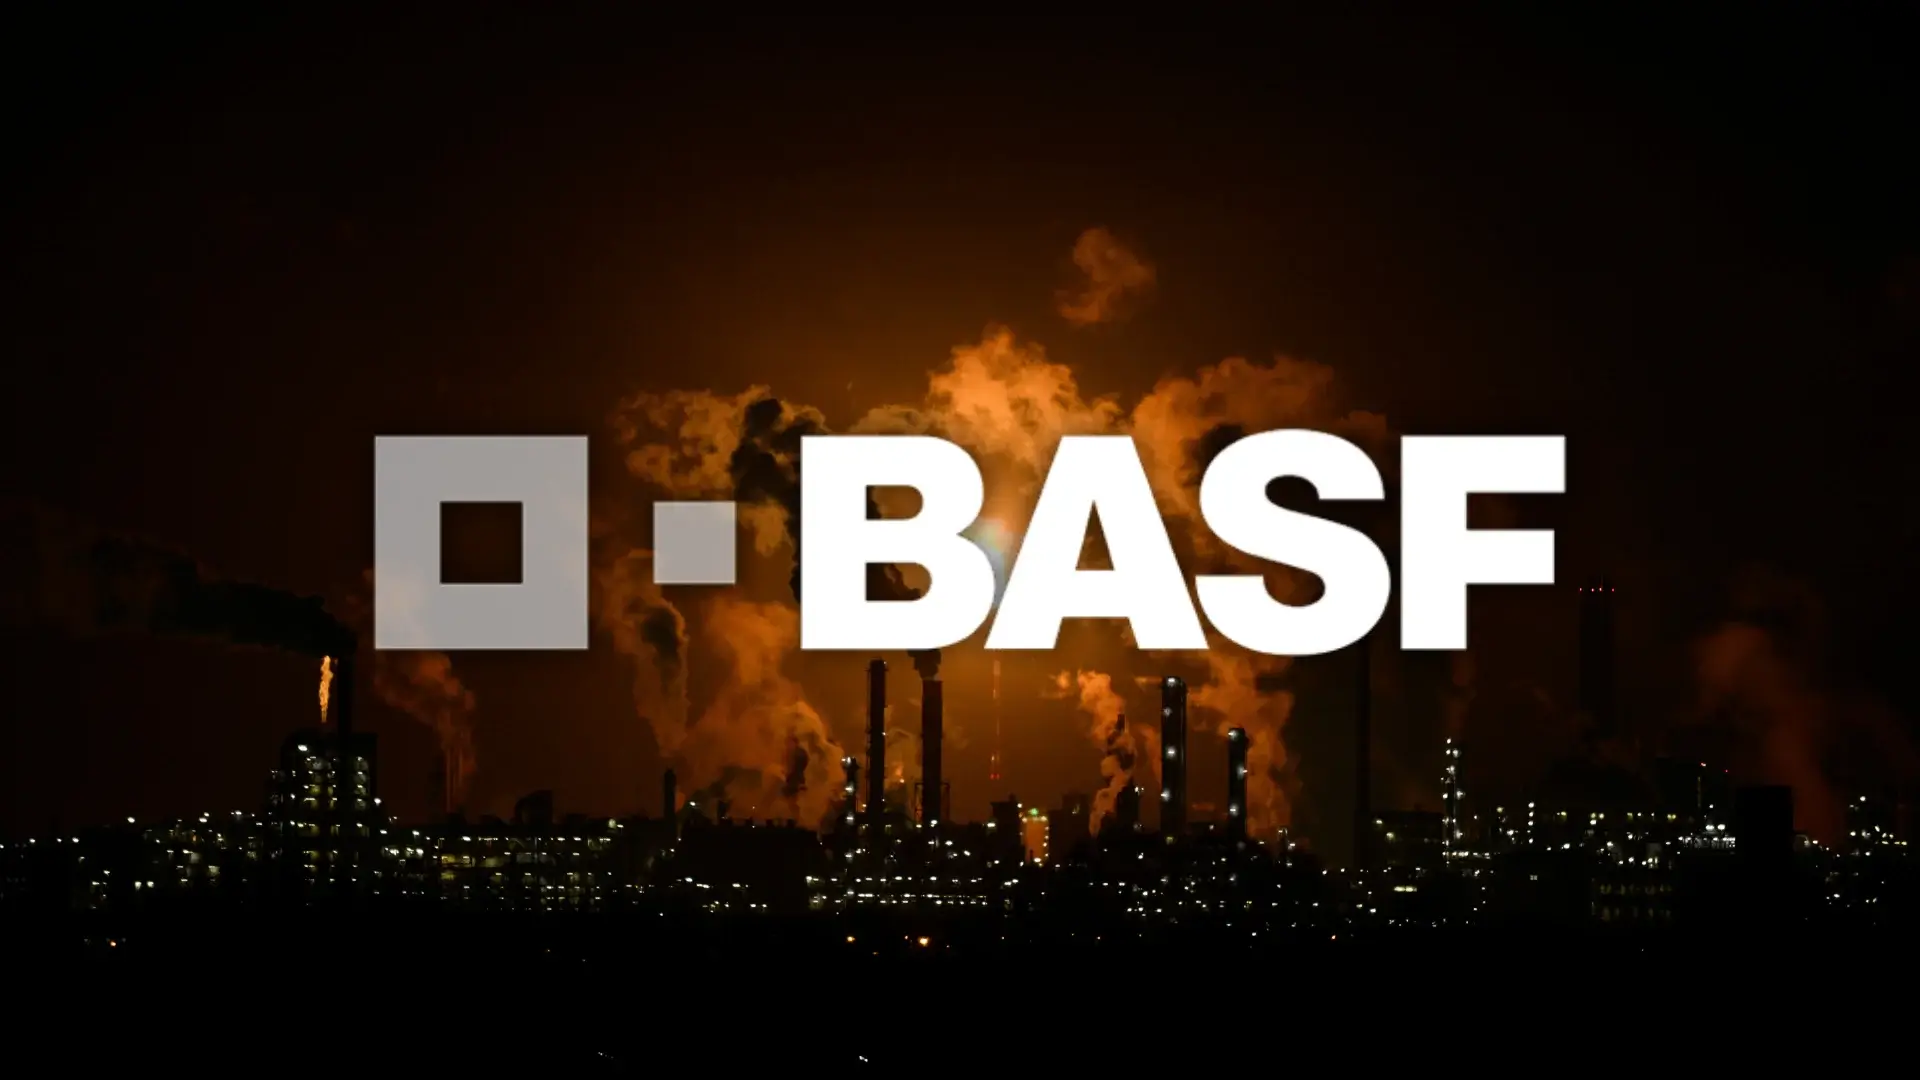 BASF Aktie Analyse – Gelingt der Turnaround?